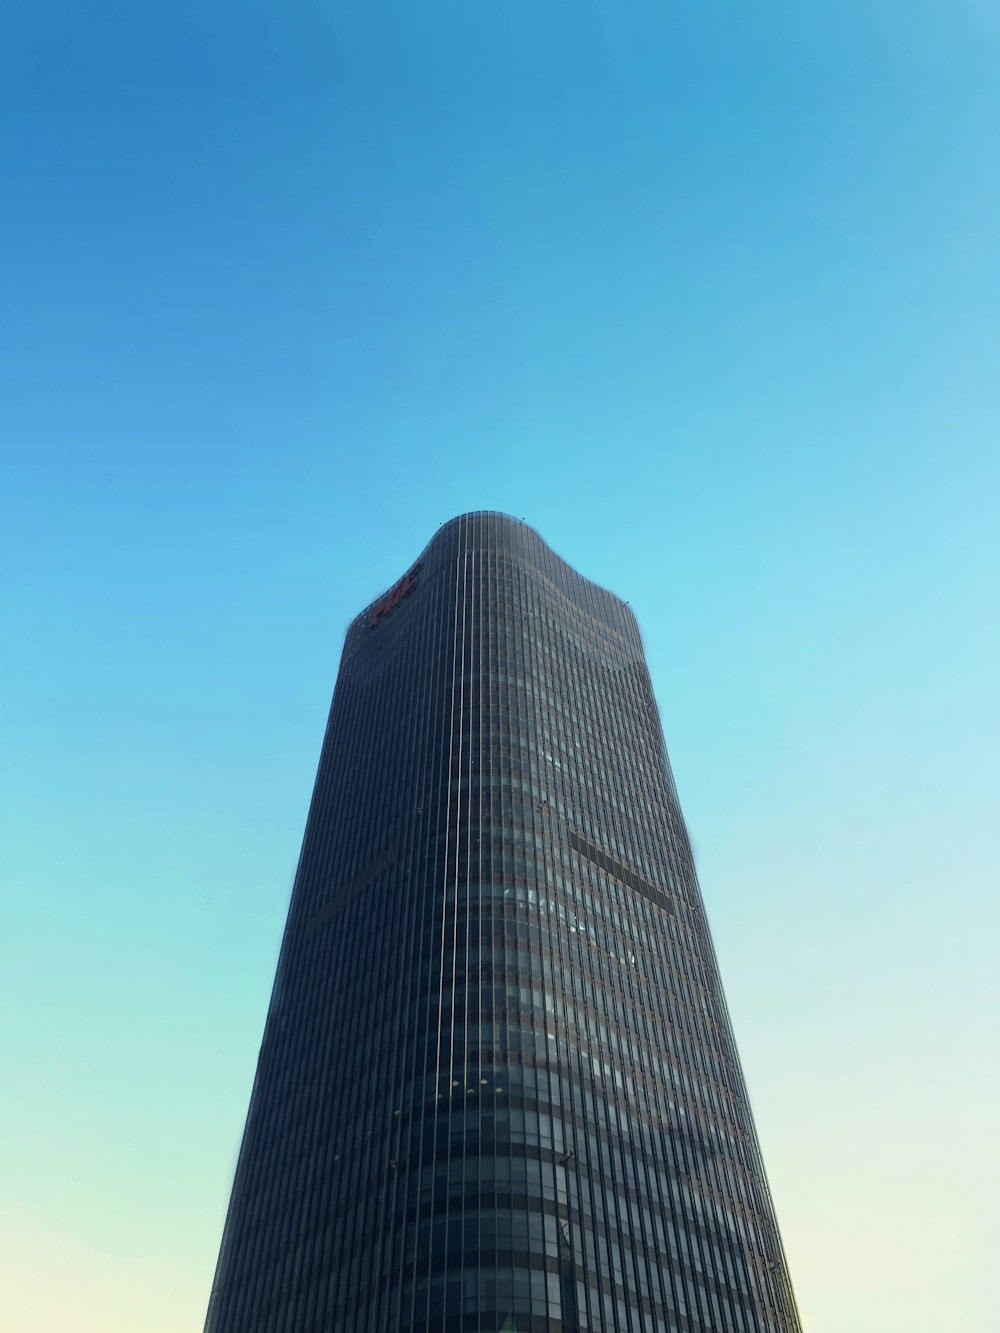 edifício preto e branco sob o céu azul durante o dia